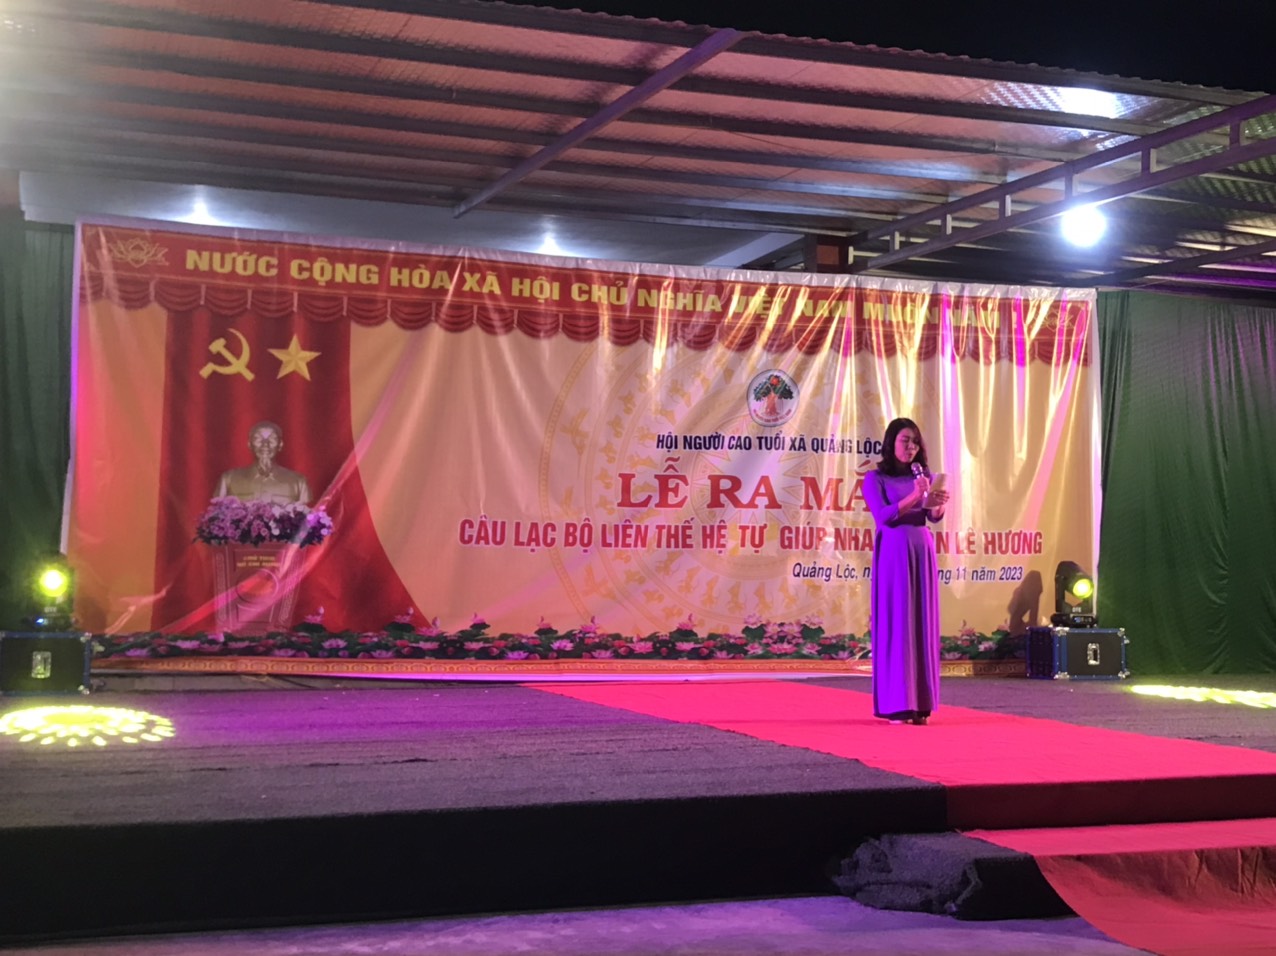 Ra mắt Câu lạc bộ Liên thế hệ tự giúp nhau tại cụm dân cư số 5 thôn Lê Hương